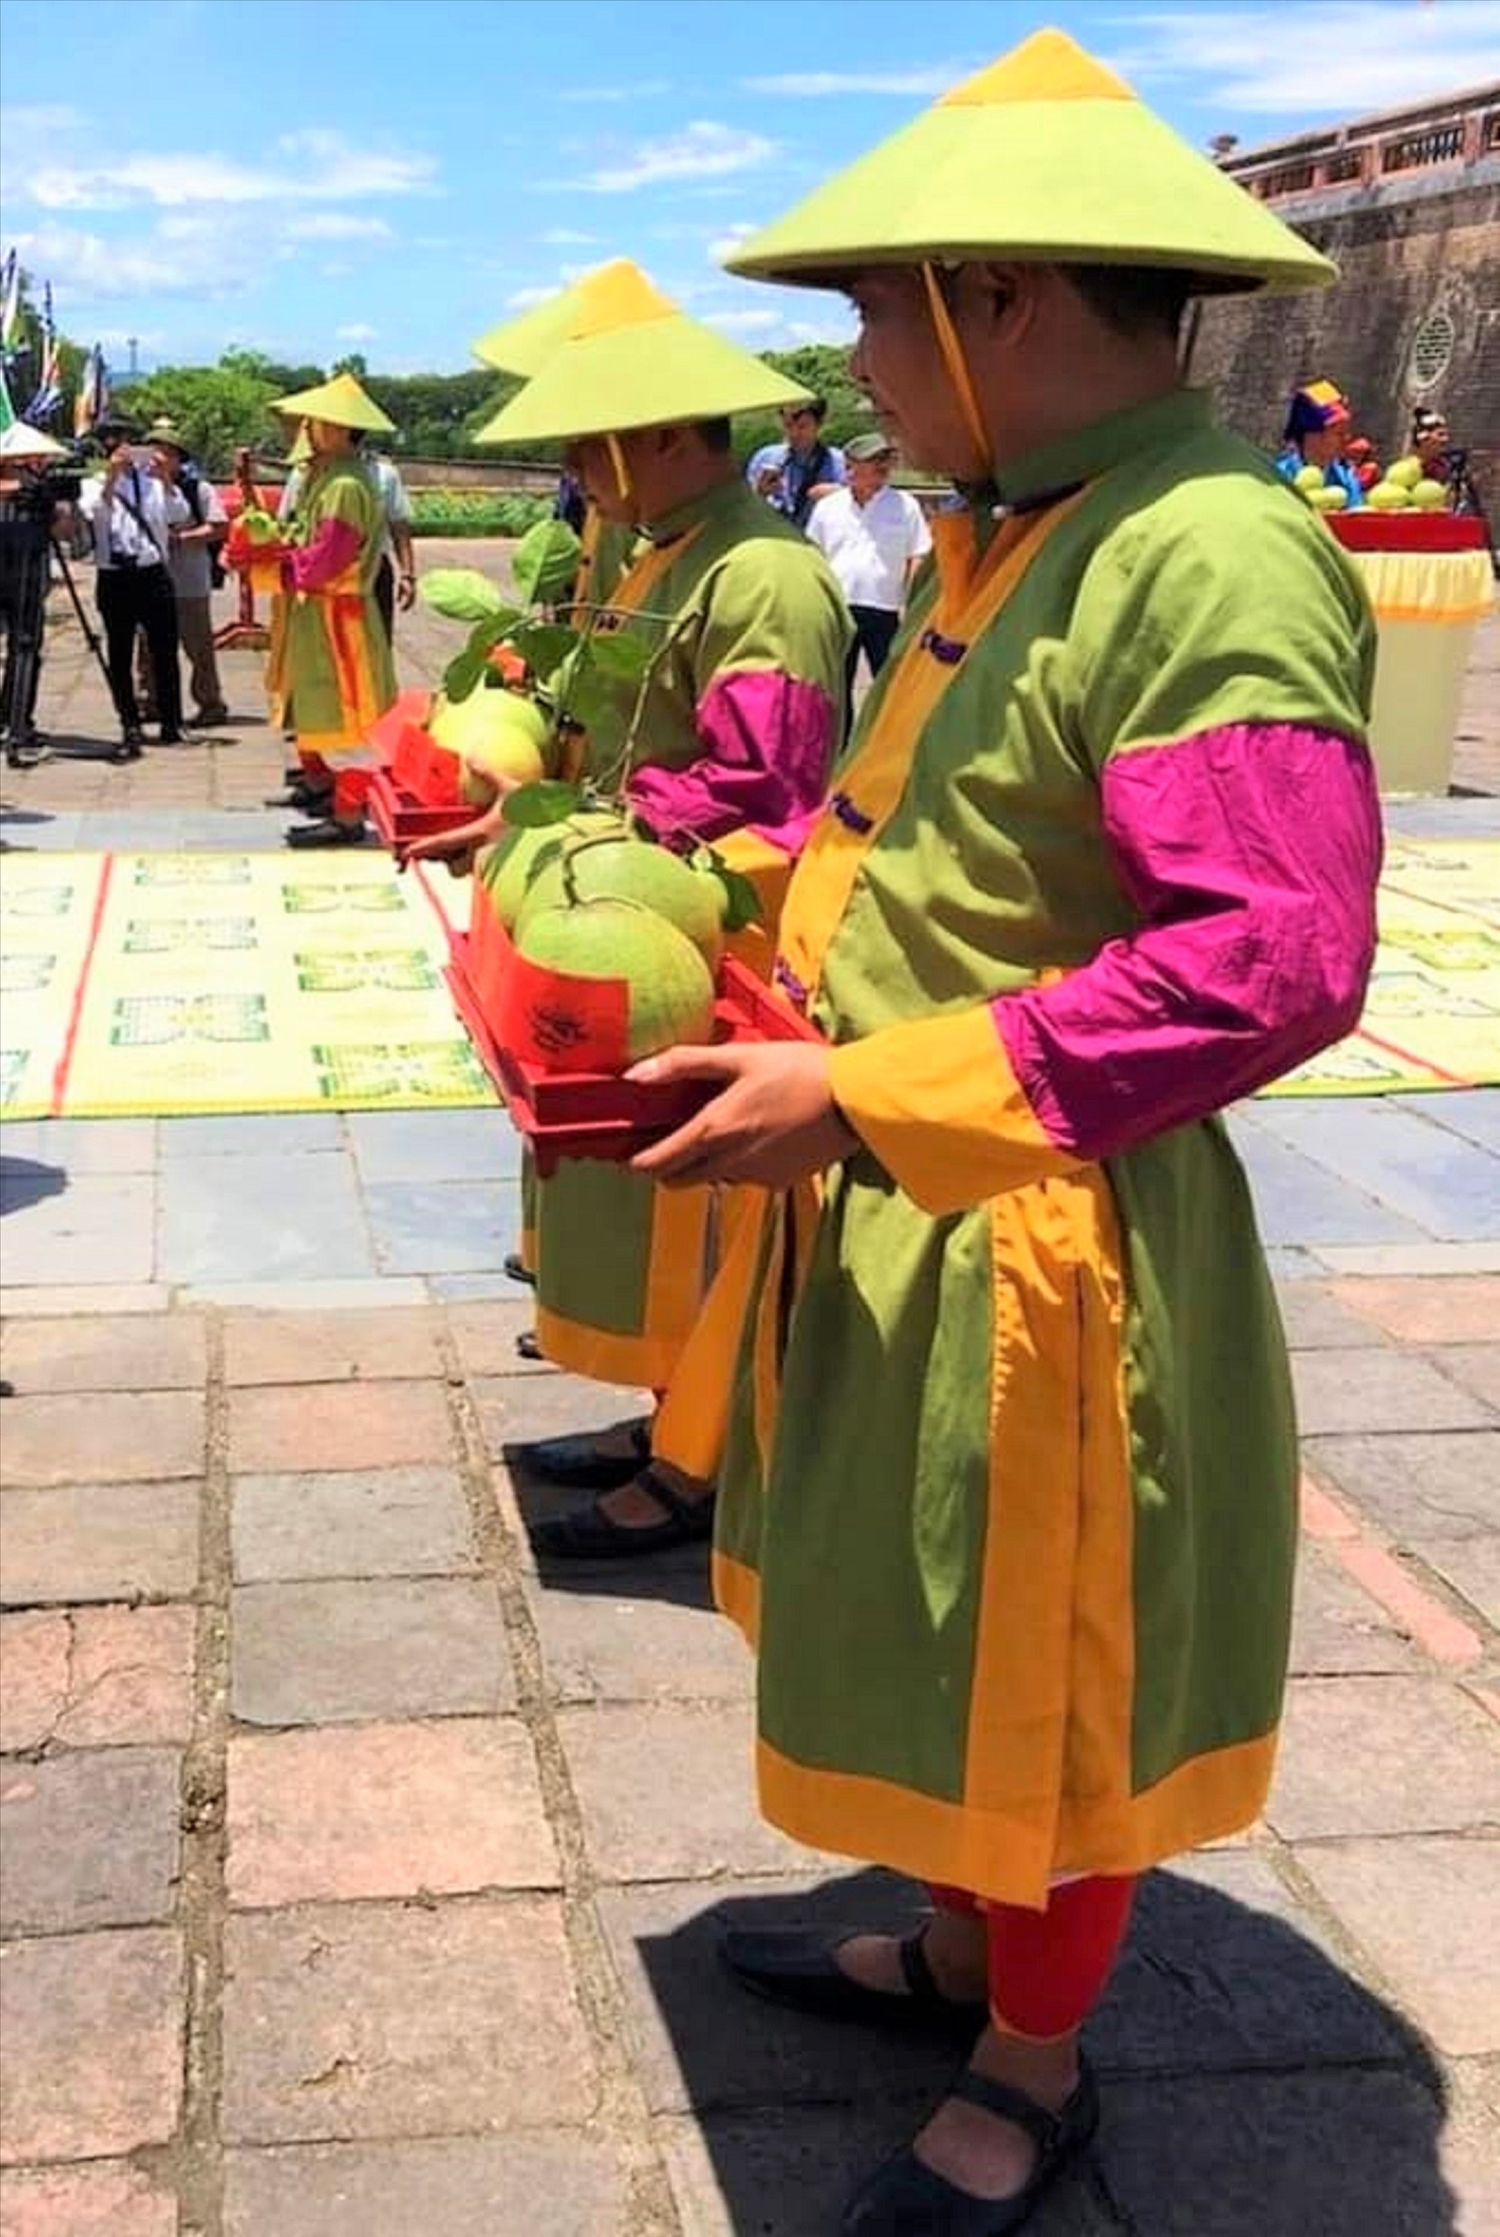 Tái hiện cảnh lễ hội Cung tiến thanh trà năm 2018 (Ảnh Bảo Minh)